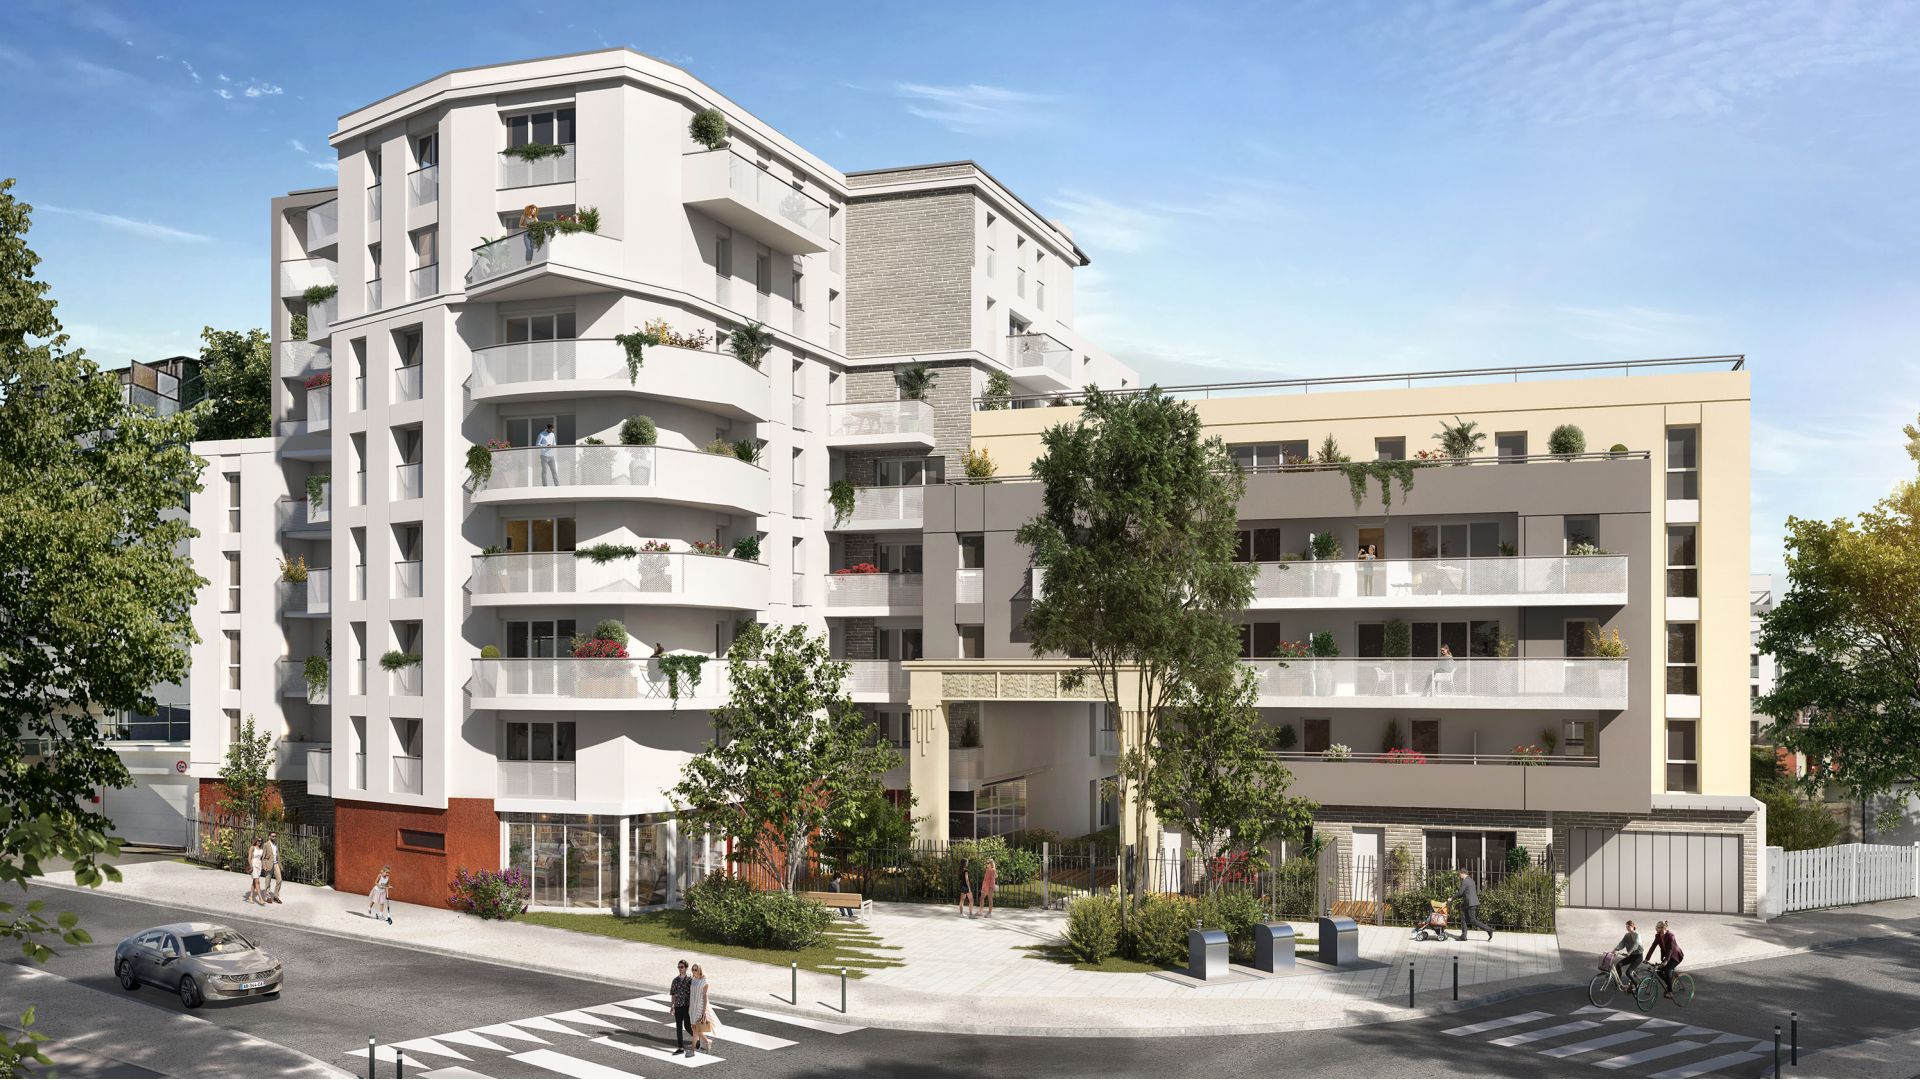 Greencity Immobilier - Résidence Amplitude - achat appartements neufs du T1 au T5 - Bezons - 95870 - Bât D - E